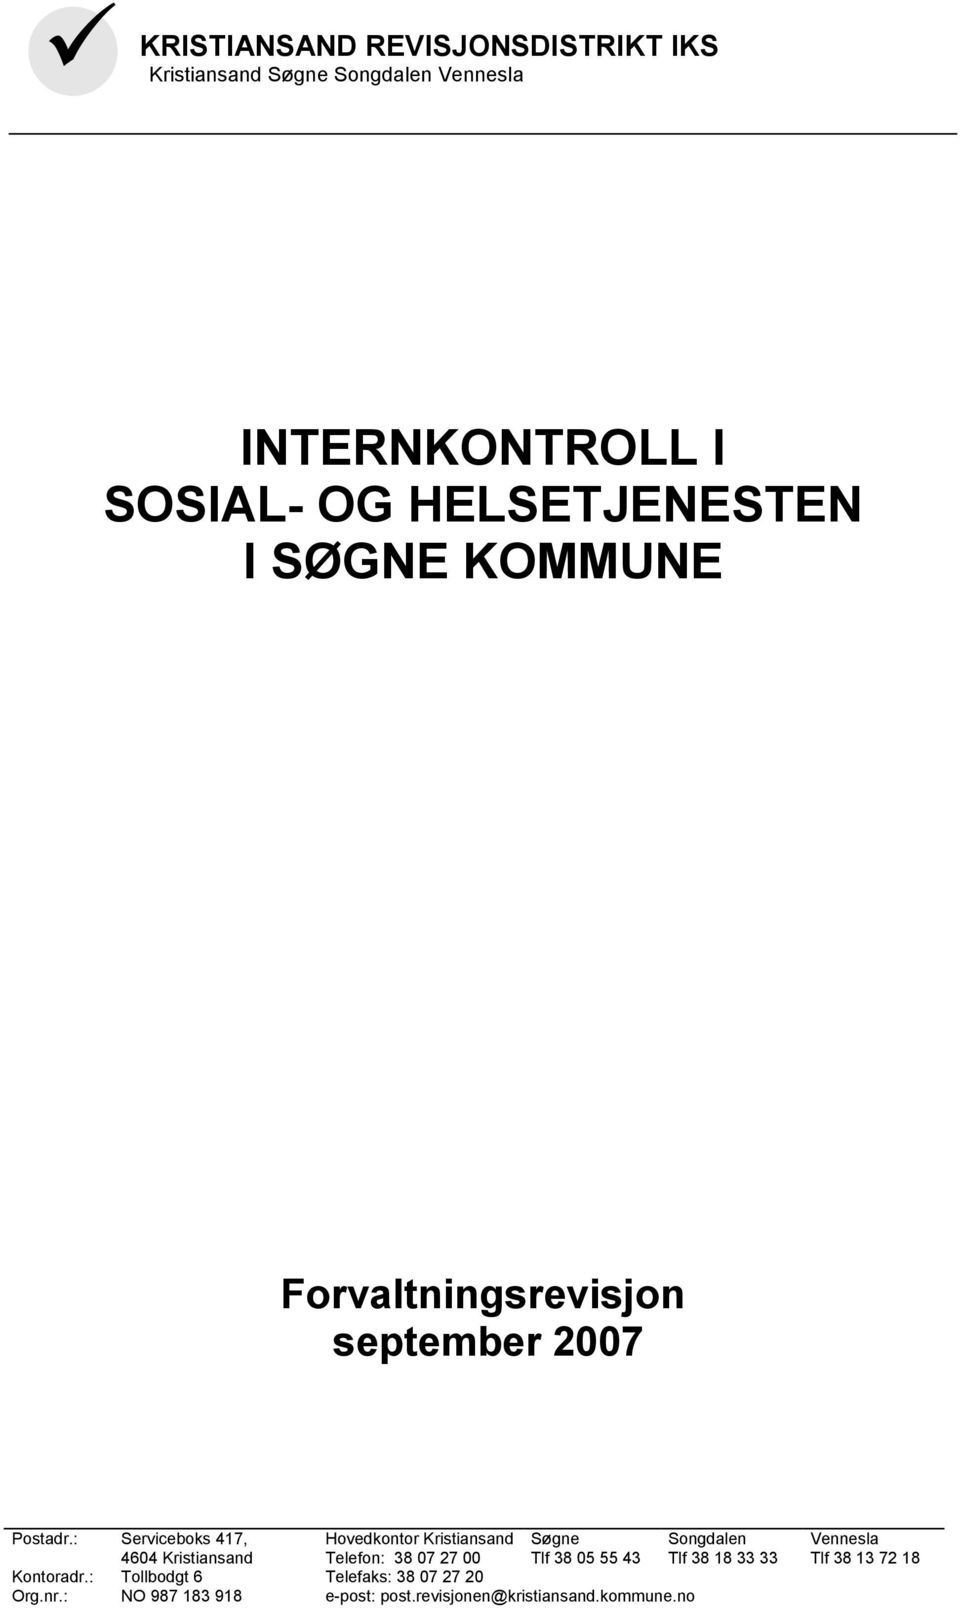 : Serviceboks 417, 4604 Kristiansand Hovedkontor Kristiansand Telefon: 38 07 27 00 Søgne Tlf 38 05 55 43